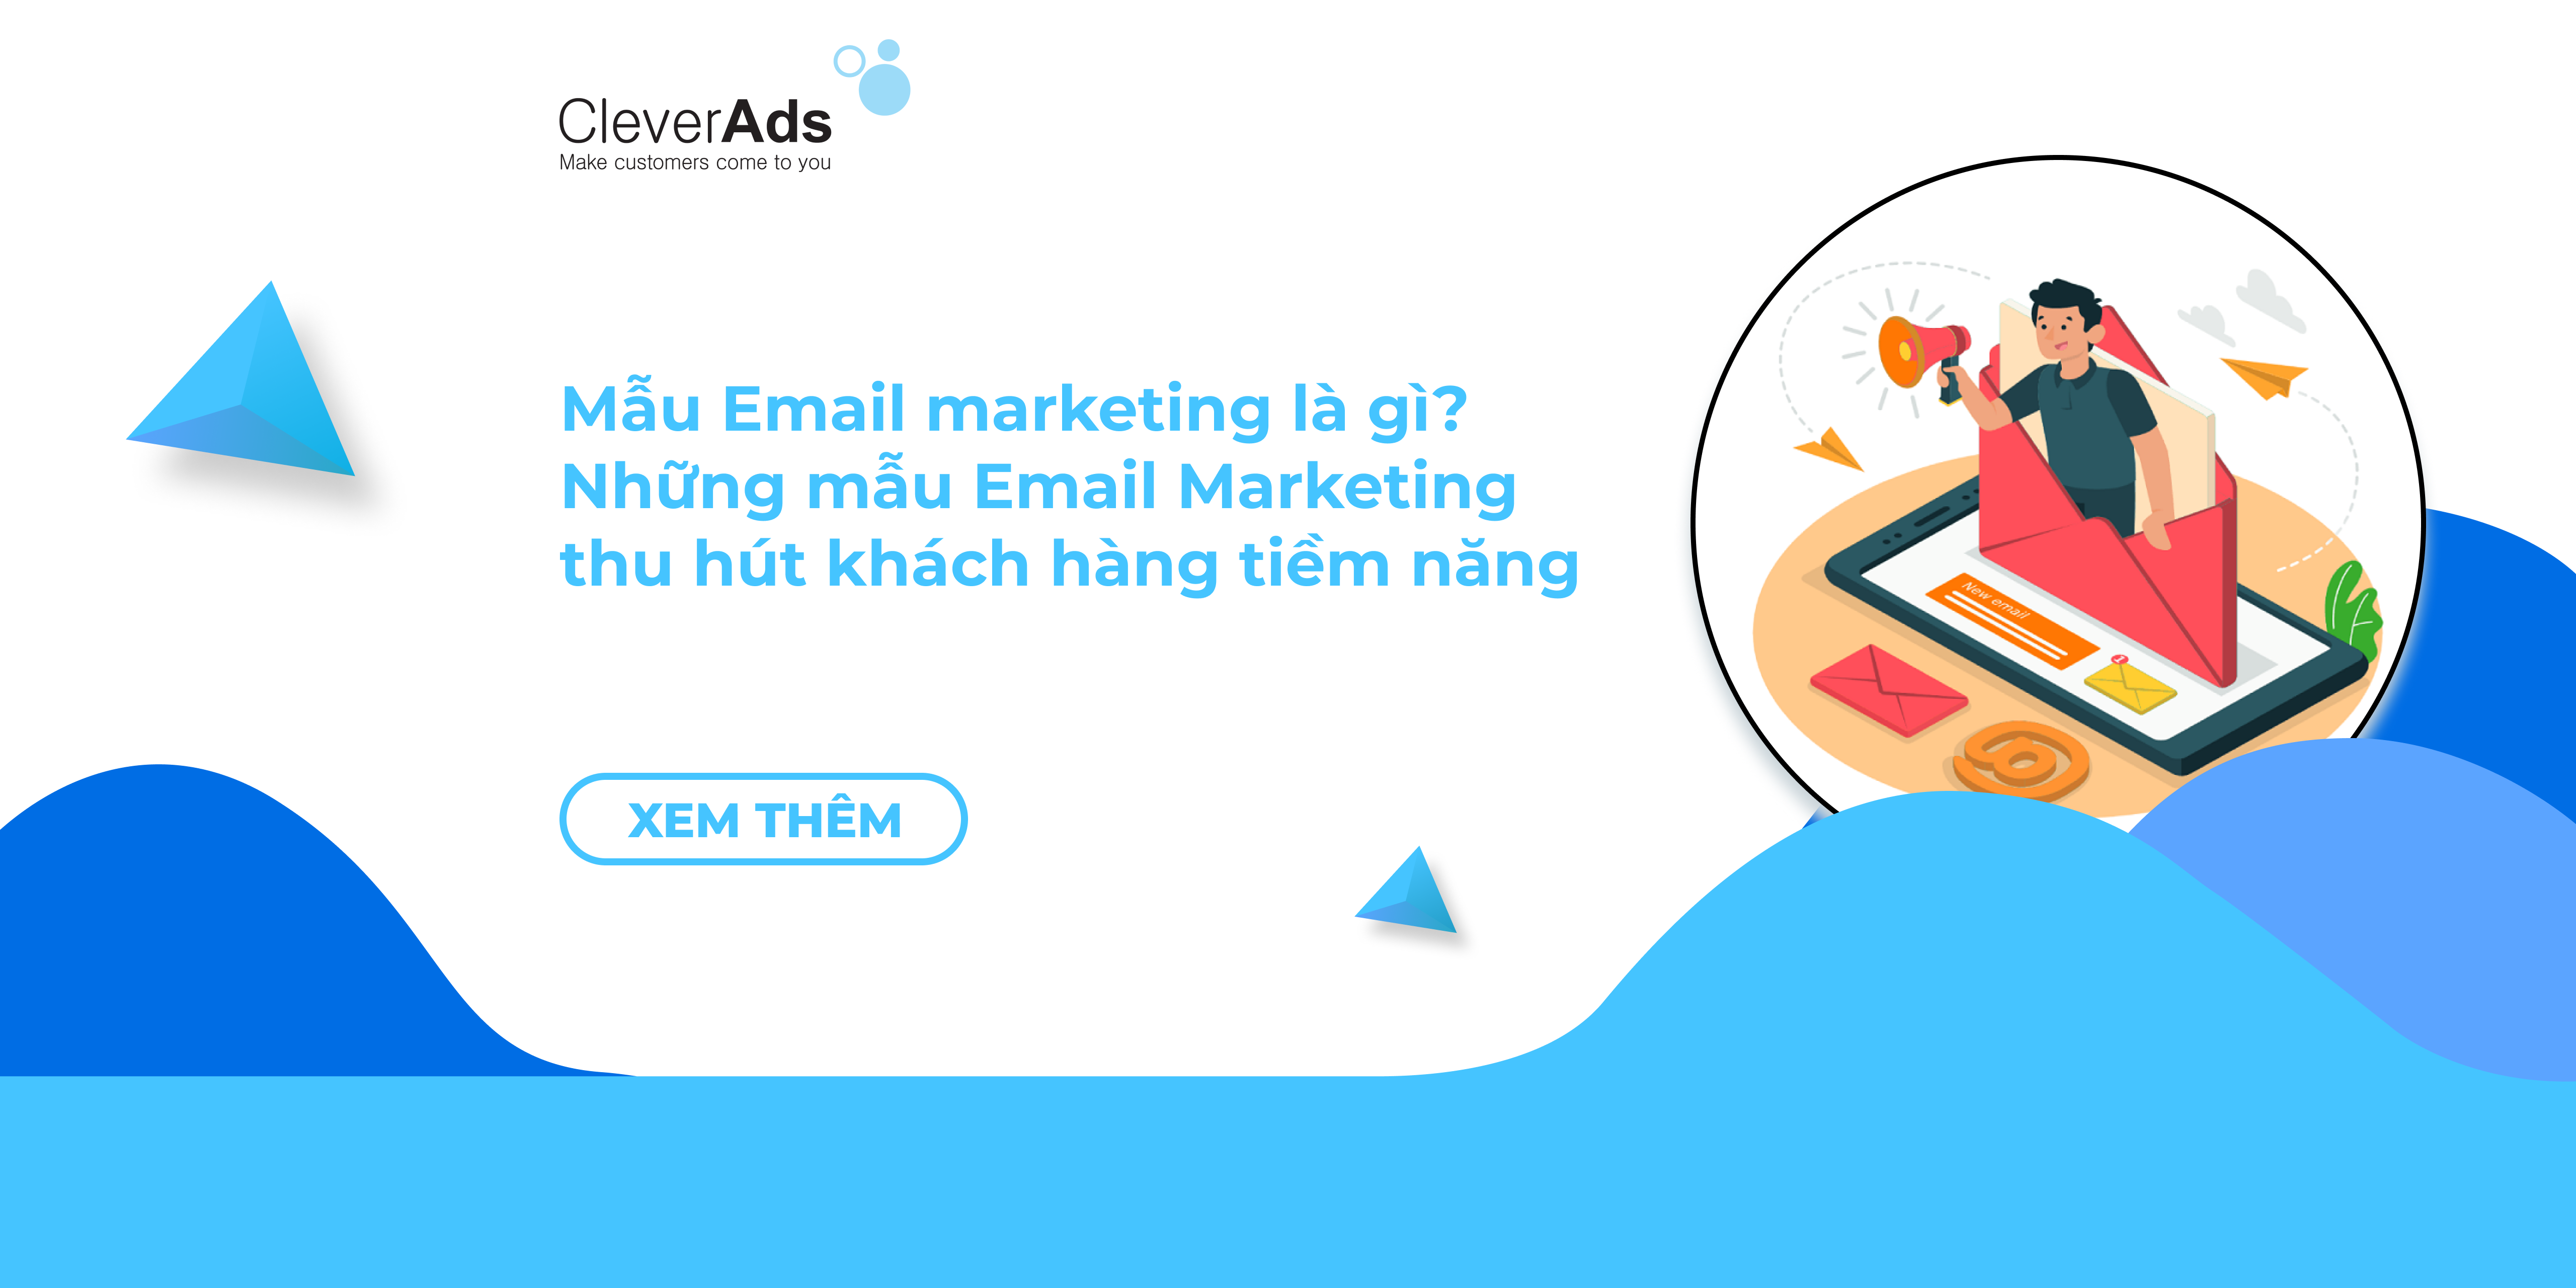 Mẫu Email Marketing là gì? Những mẫu Email Marketing thu hút